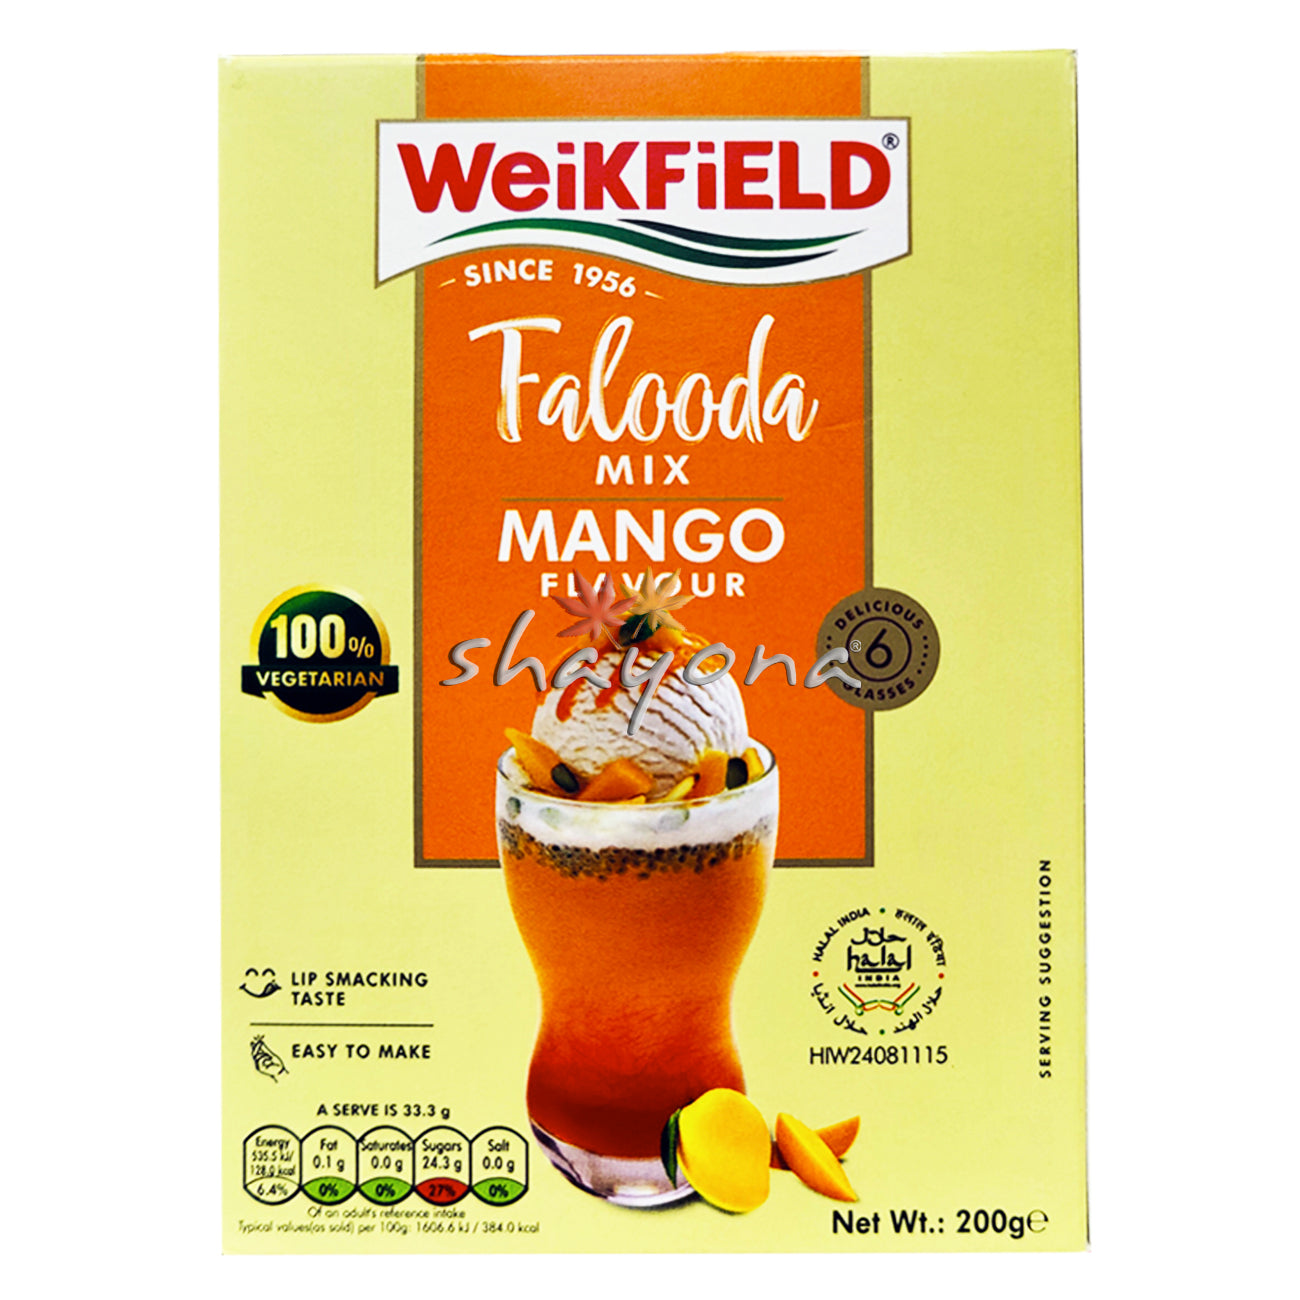 Weikfield Falooda Mix Mango